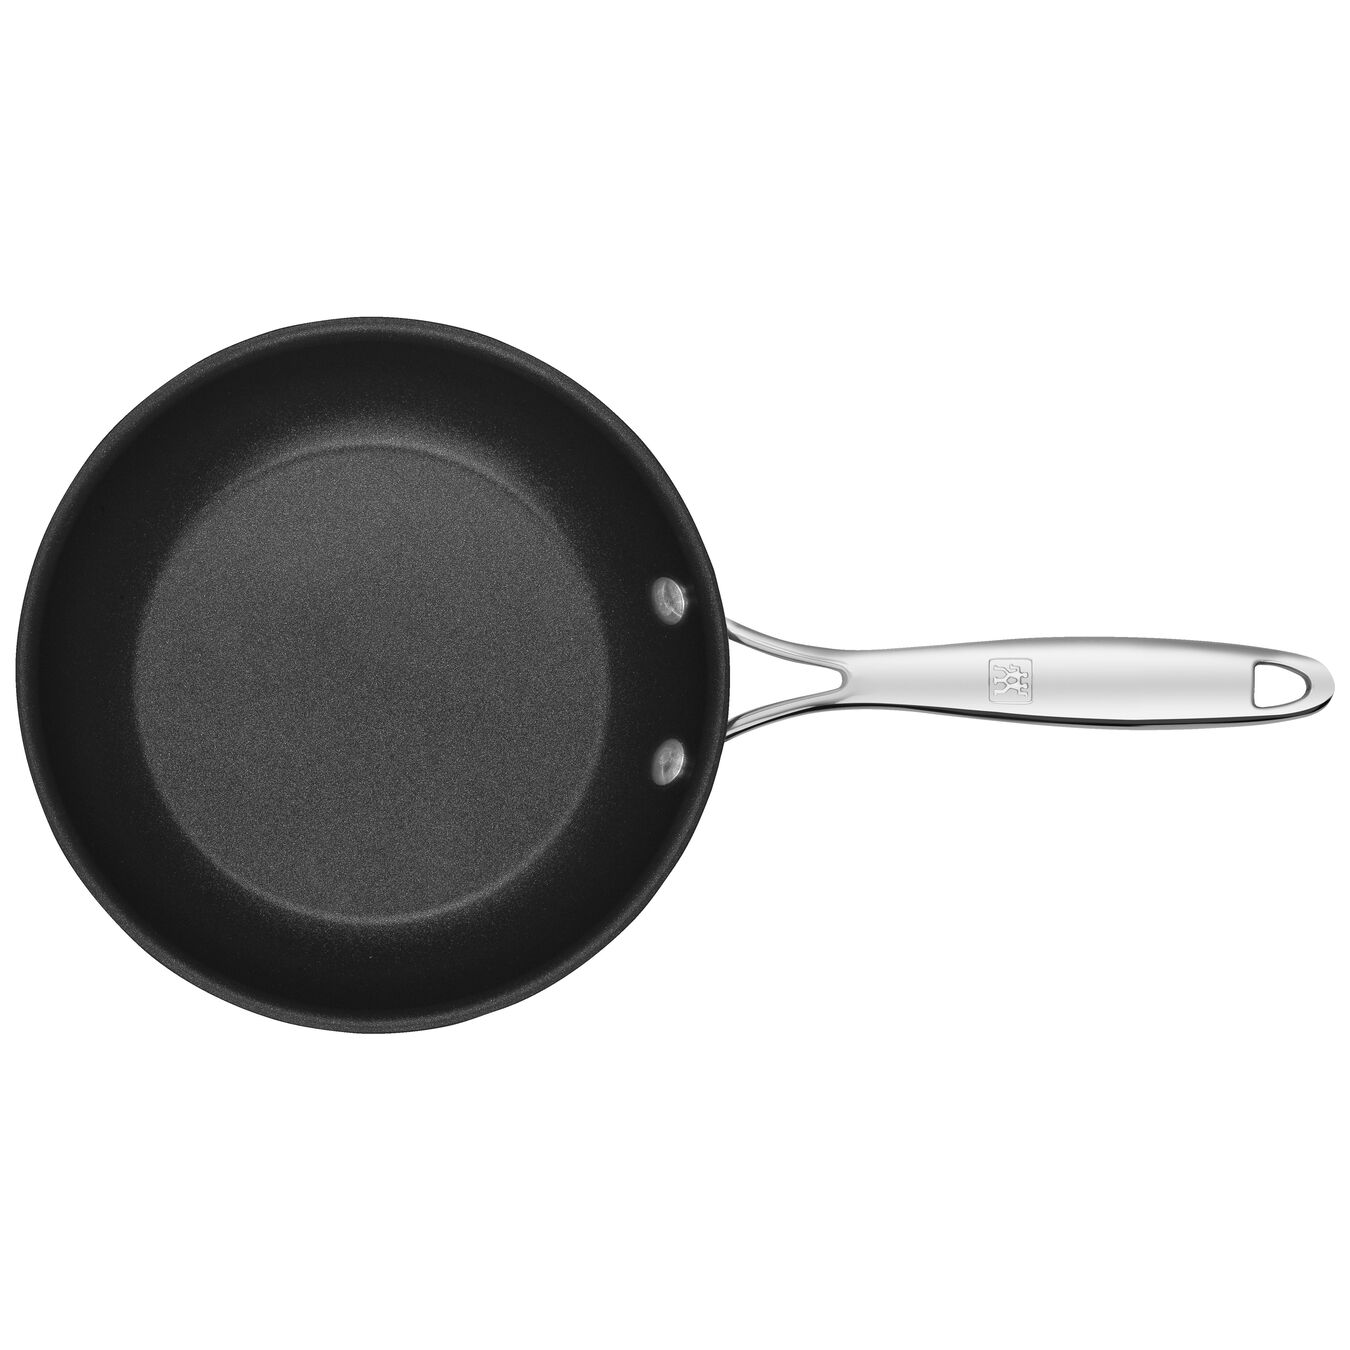 20 cm Aluminium Frying pan black,,large 7